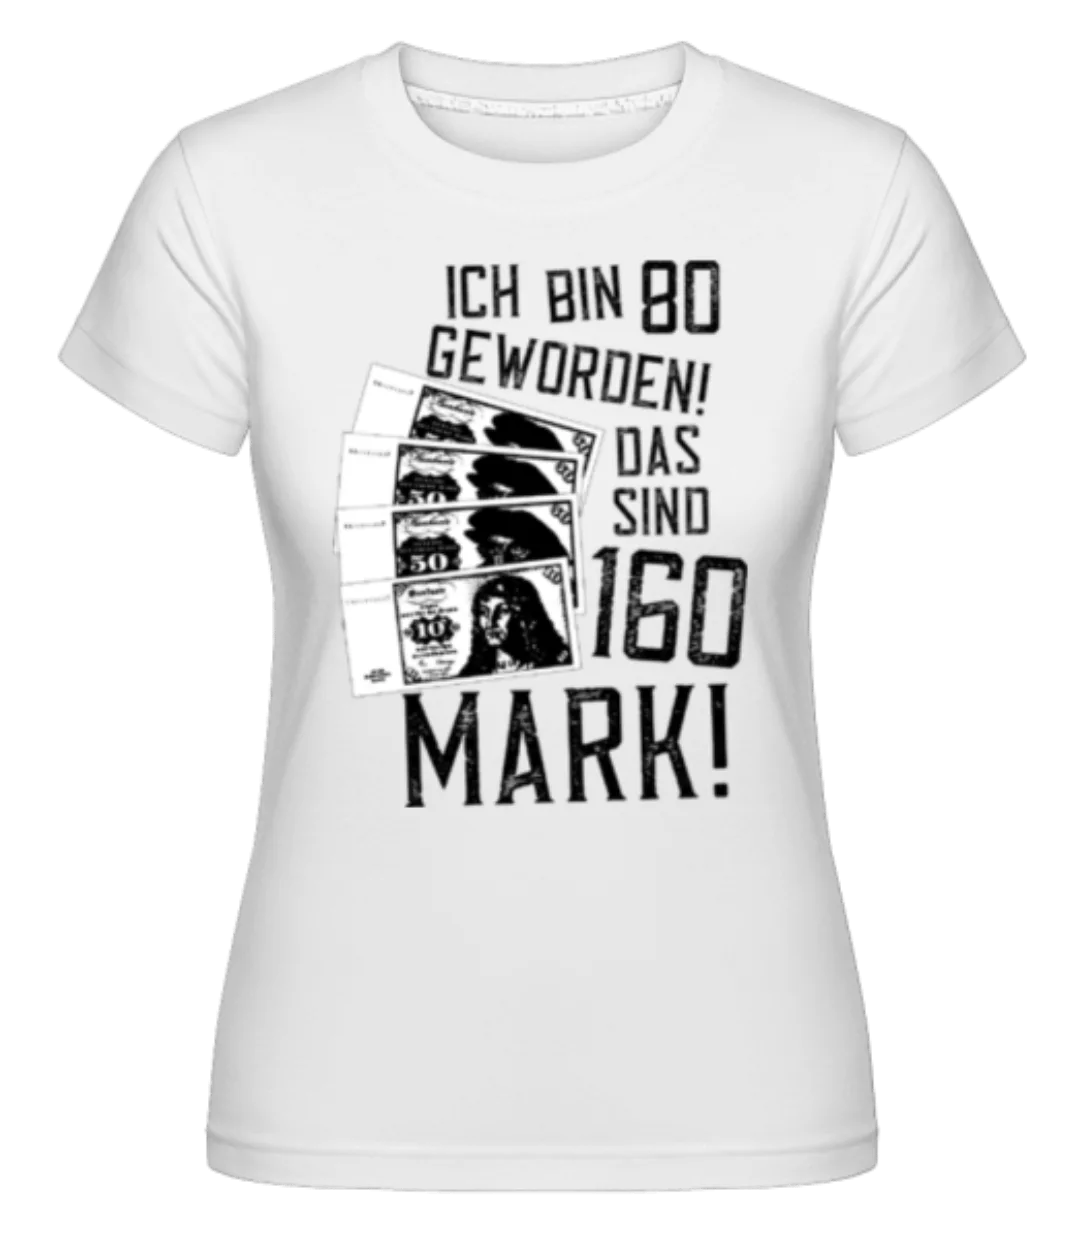 Bin 80 160 Mark · Shirtinator Frauen T-Shirt günstig online kaufen